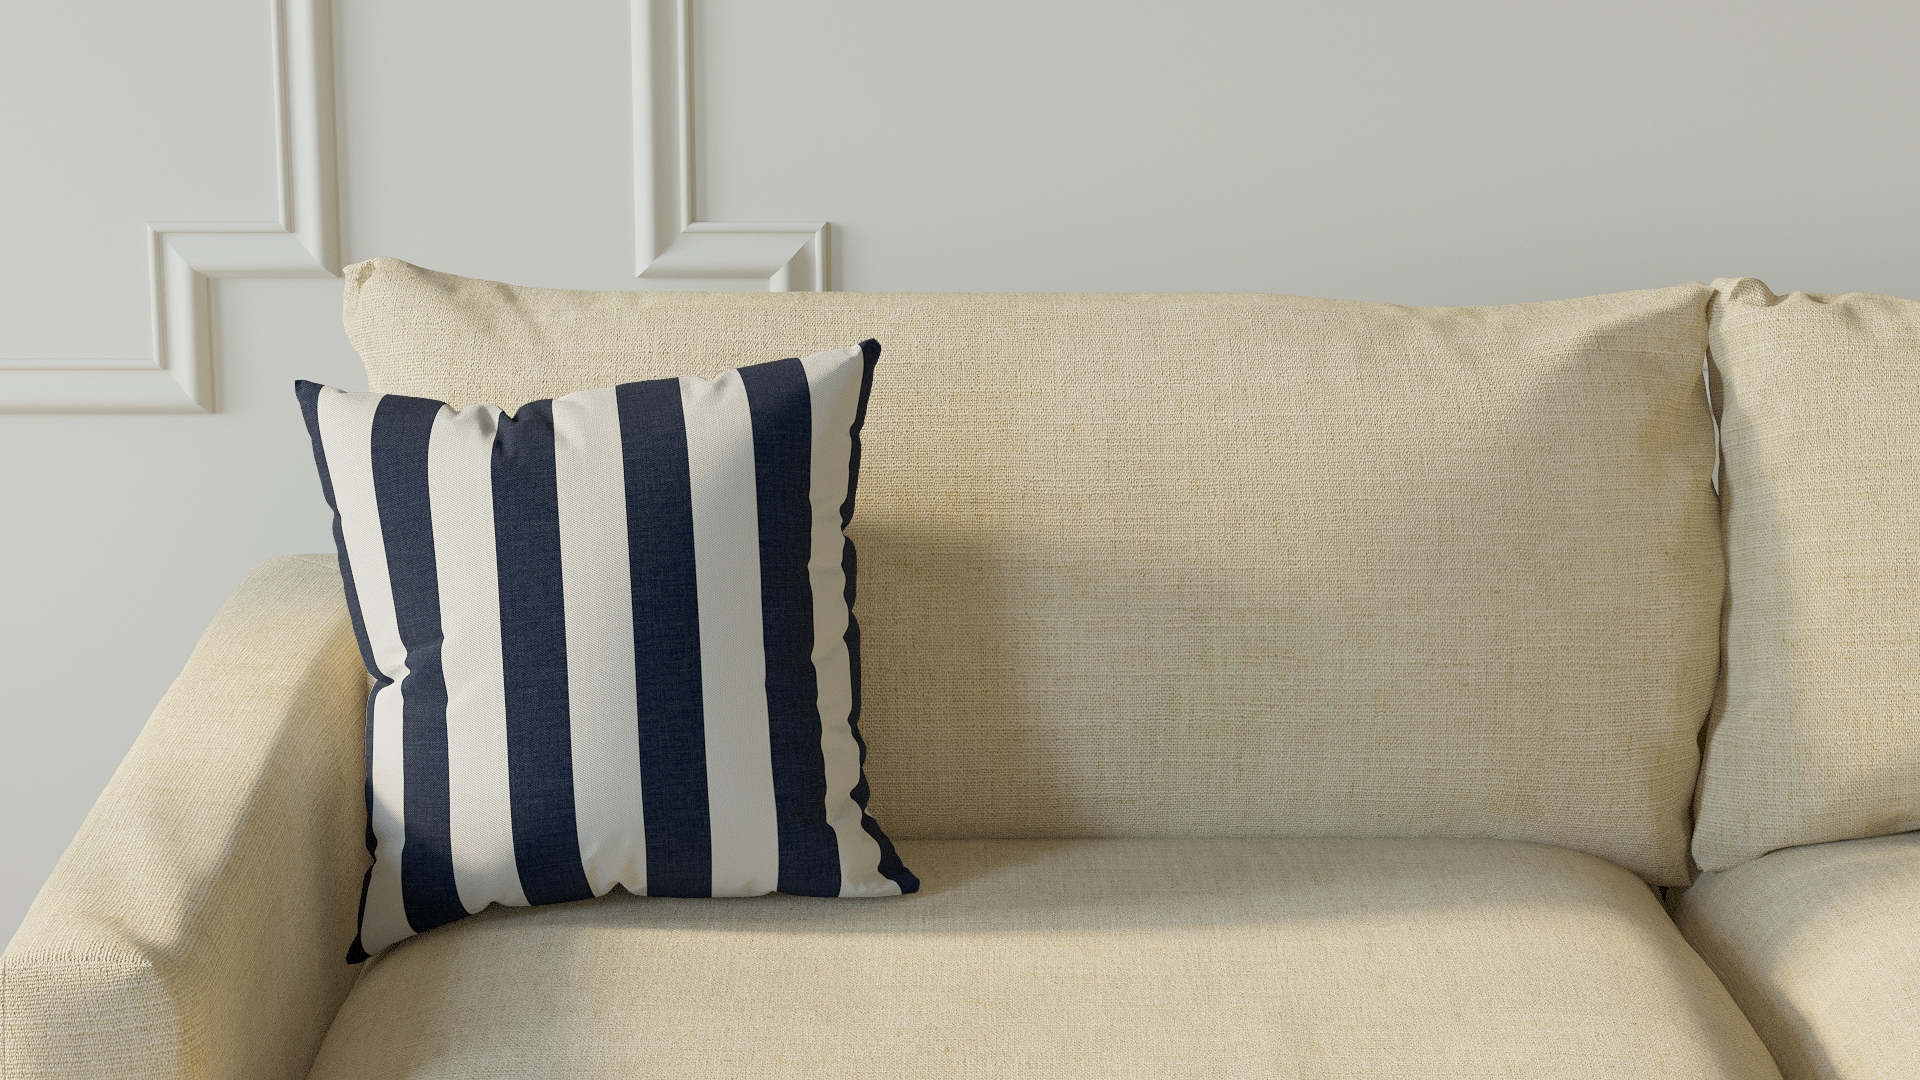 Throw Pillow 16", Navy Cabana Stripe, 16" x 16" - Image 2